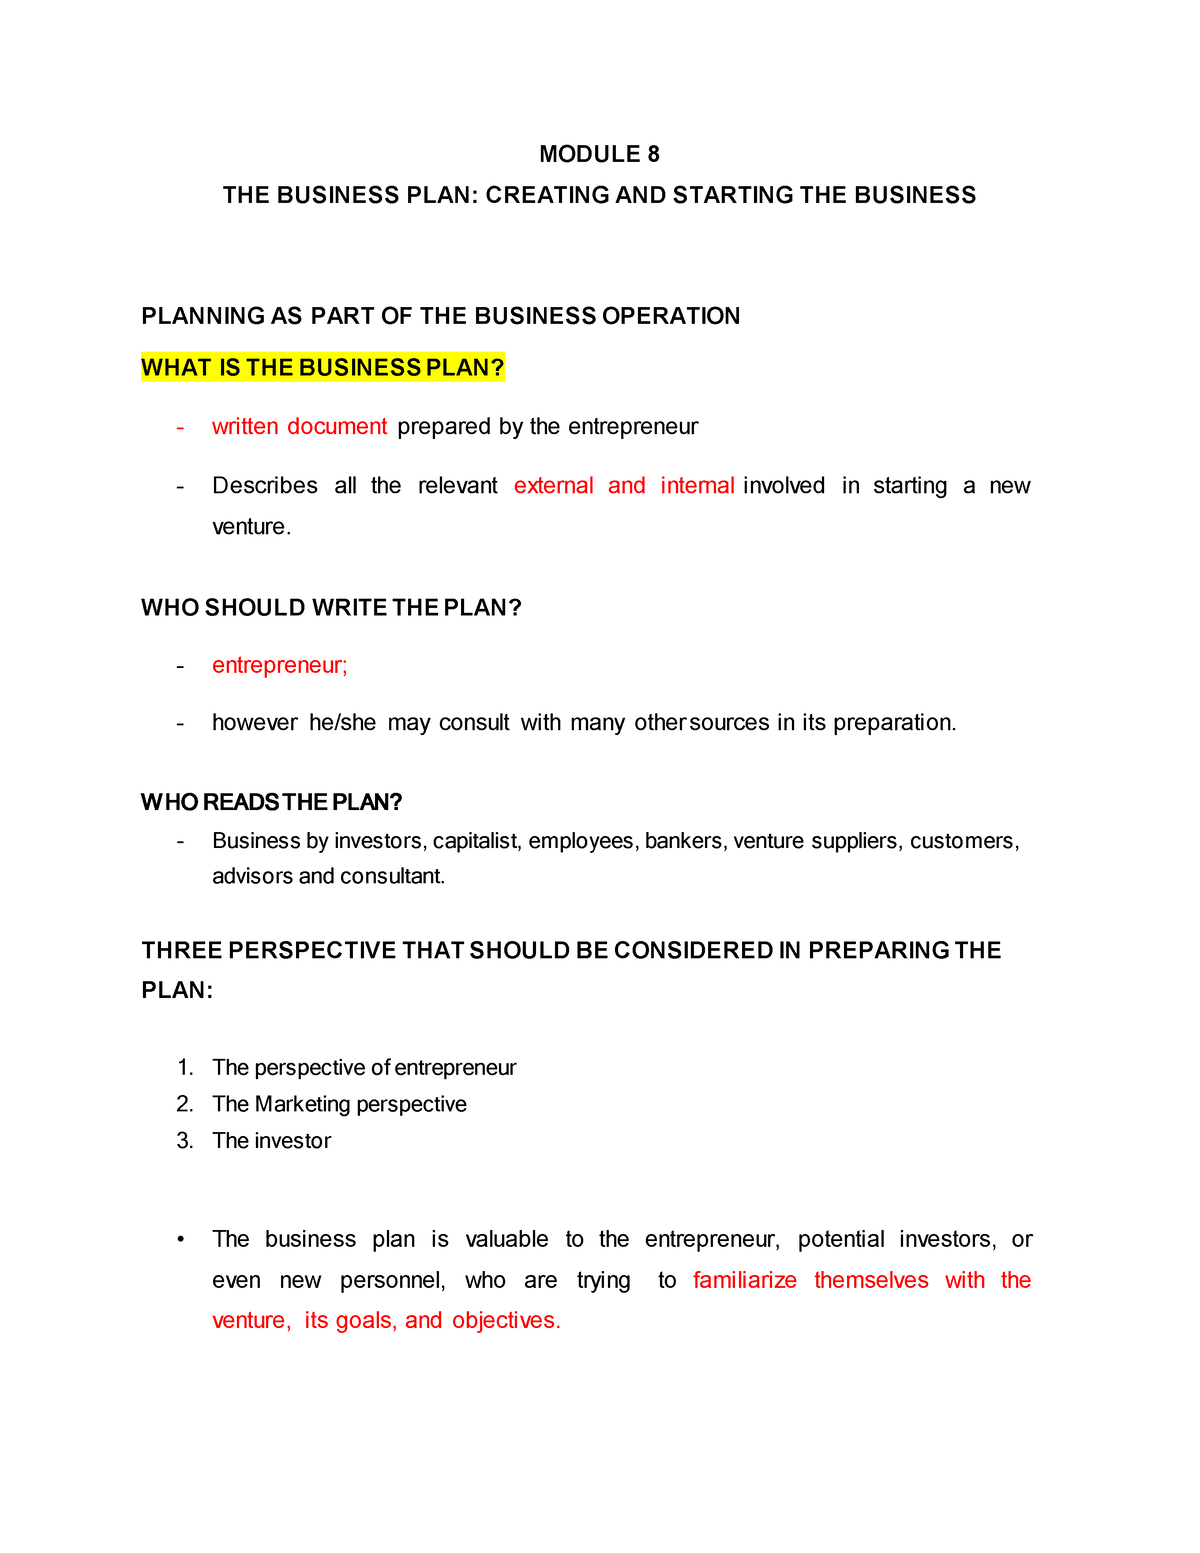 business plan macabo pdf